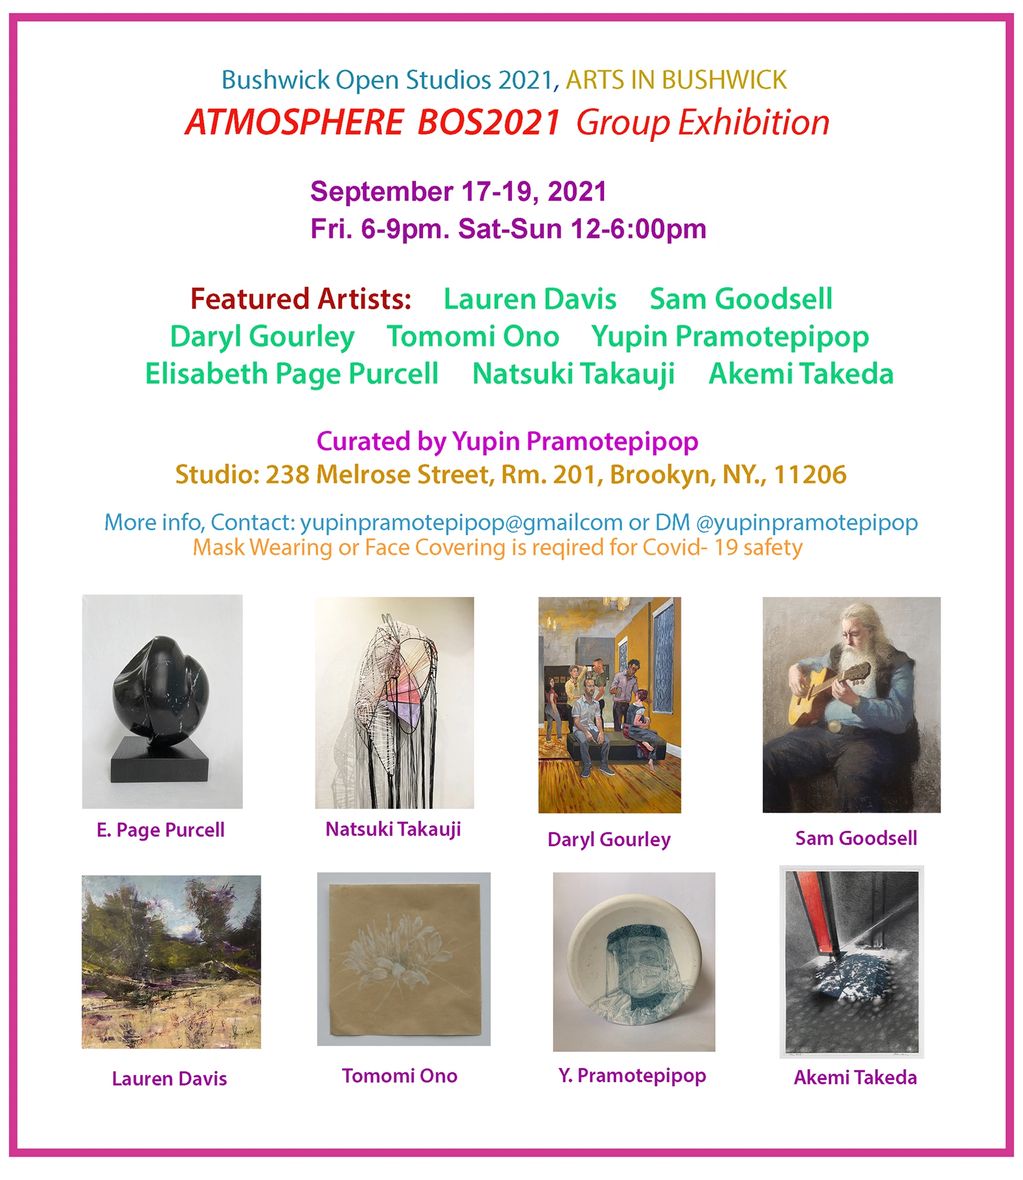 Atmosphere BOS2021 Exhibition is part of Bushwick Open Studios, Arts in Bushwick, Brooklyn, NY.